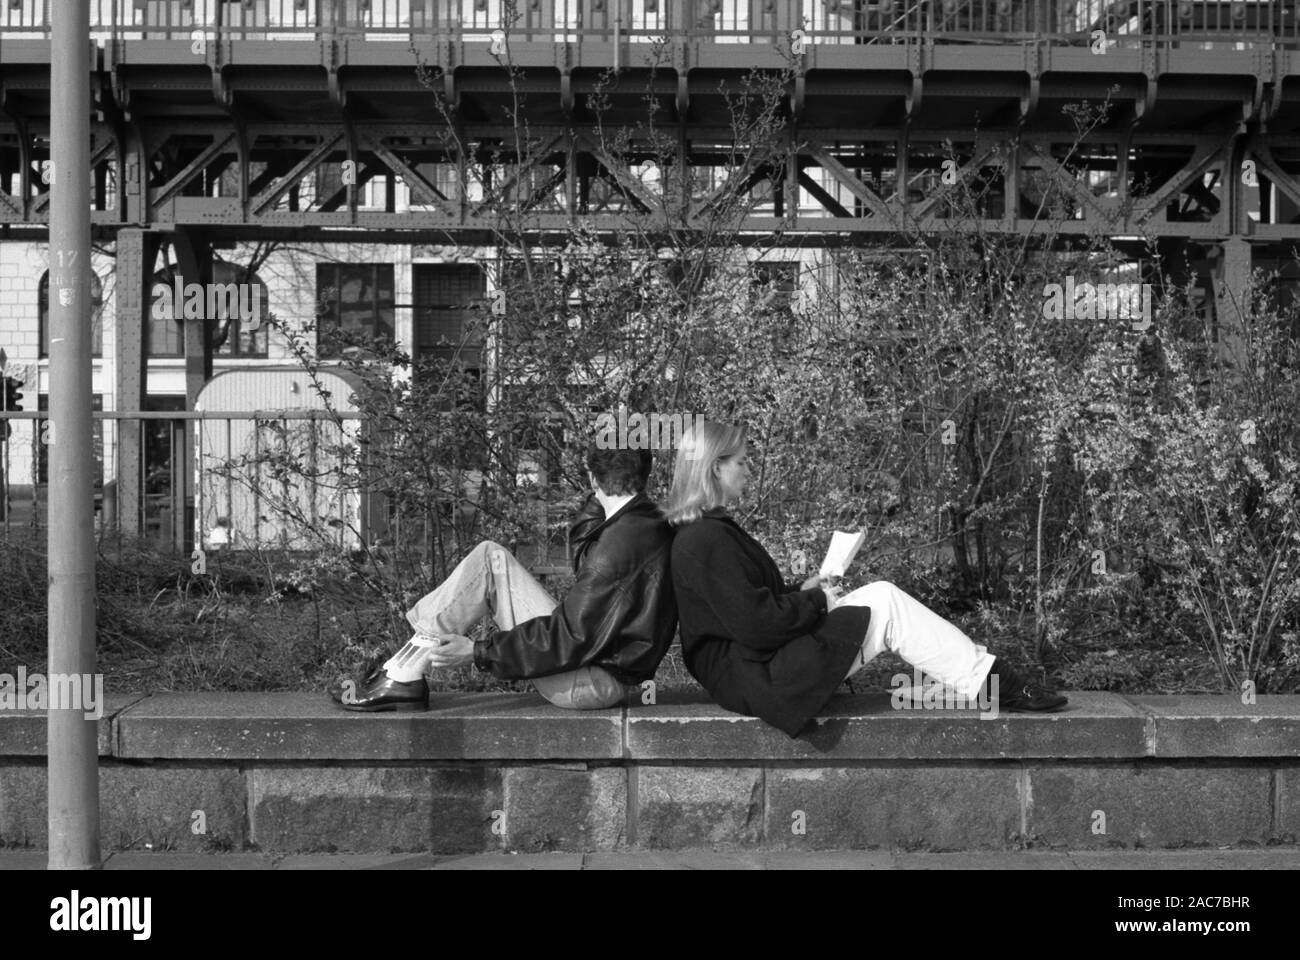 Film en noir et blanc photographie d'un couple assis dos à dos sur un muret, pas au courant de l'appareil photo, sur Johannisbollwerk, Hambourg, Allemagne, vers 1990 Banque D'Images